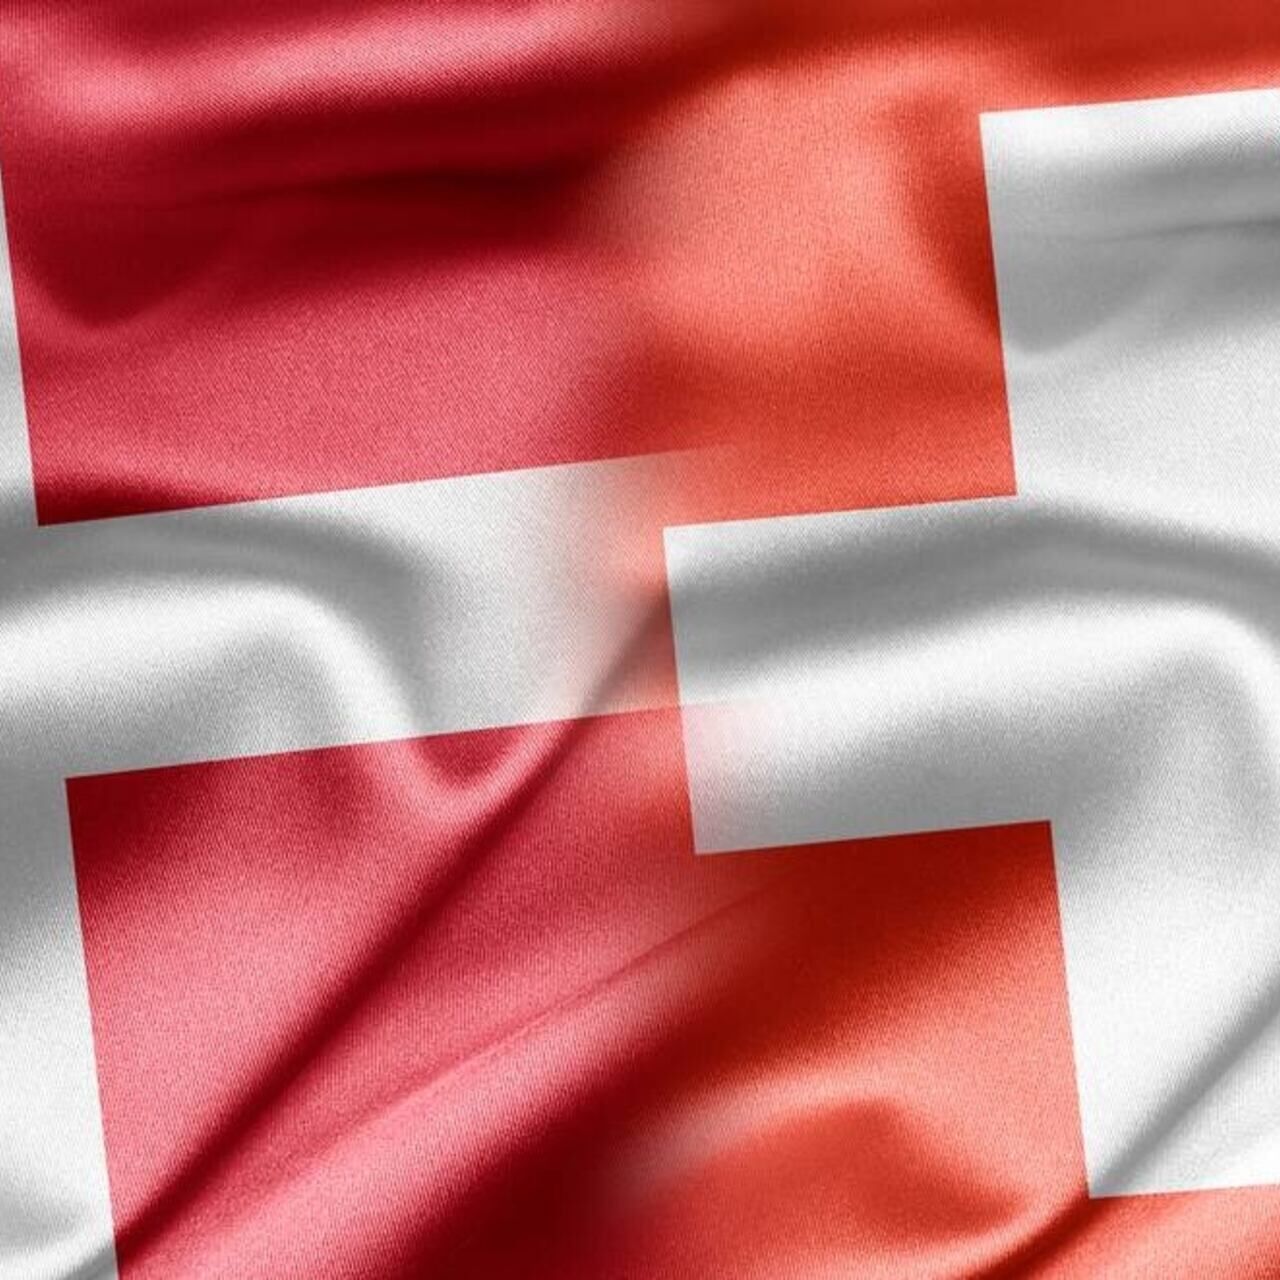 Zwitserland Denemarken: een grafische samensmelting tussen de vlaggen van de Confederatie en het Koninkrijk